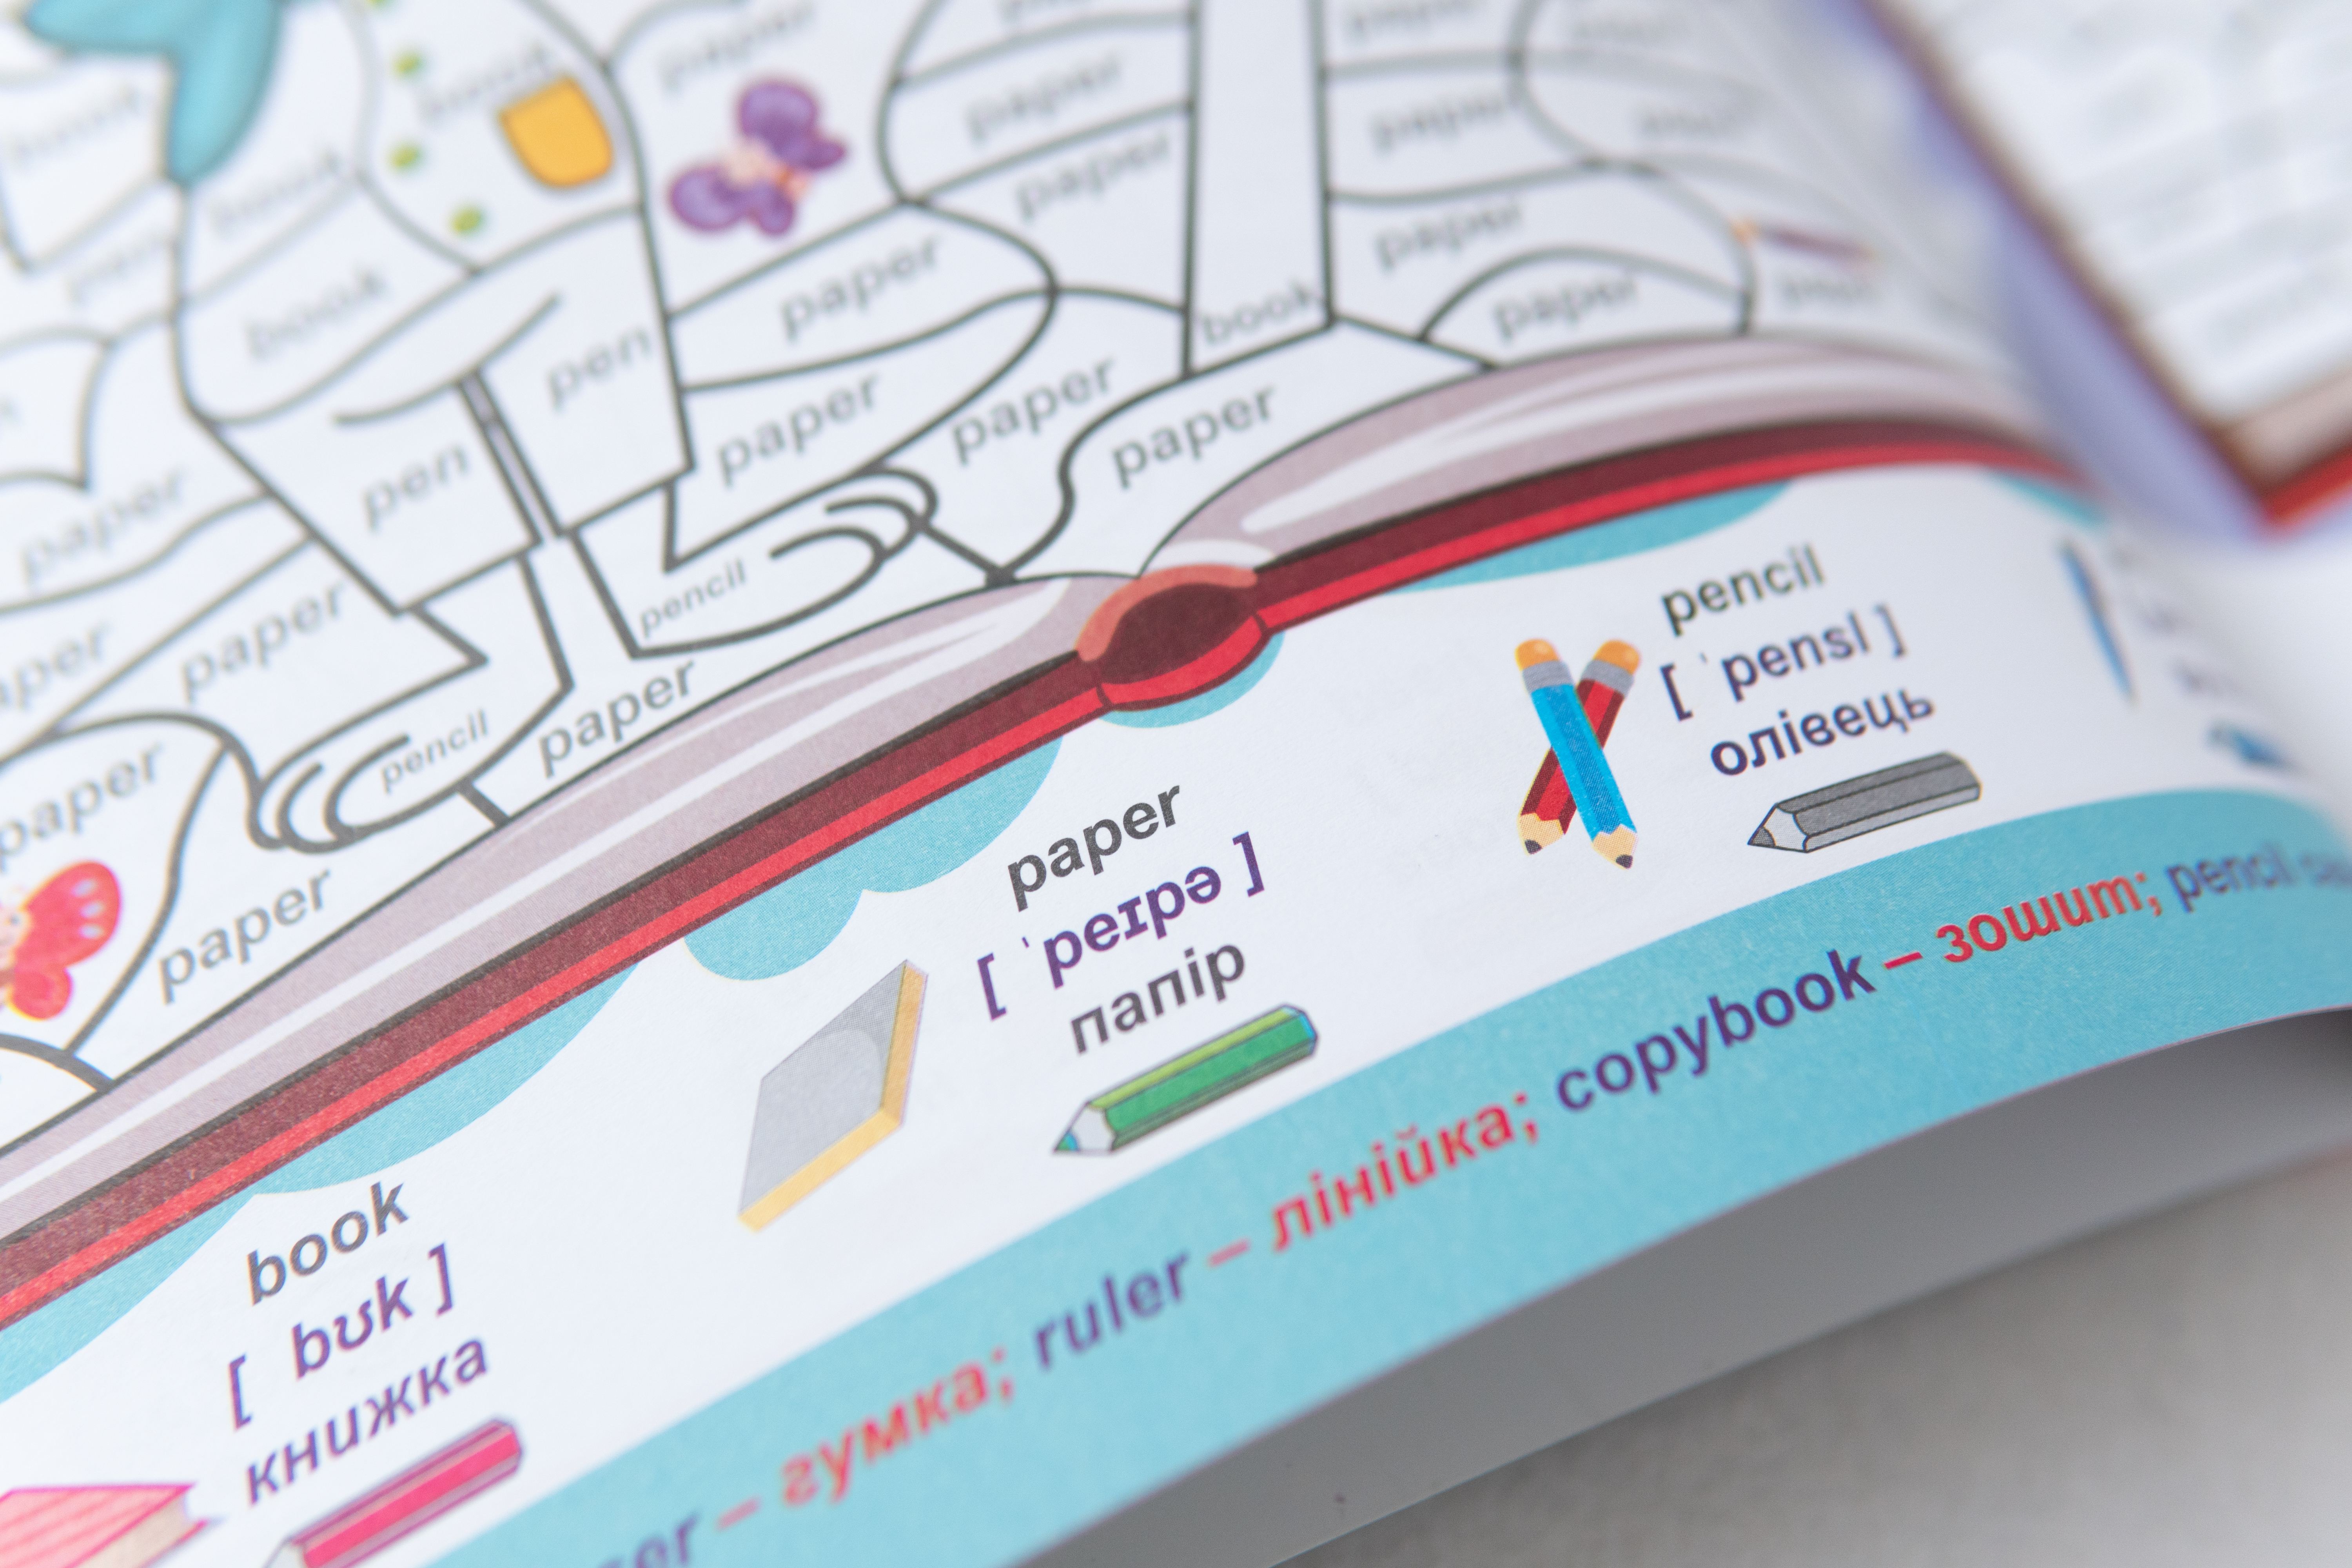 Ausmalbuch - Zeichnen und Englisch lernen 4 Wörter + 4 Farben/Ausmalbuch - Zeichnen und Englisch lernen 4 Wörter + 4 Farben